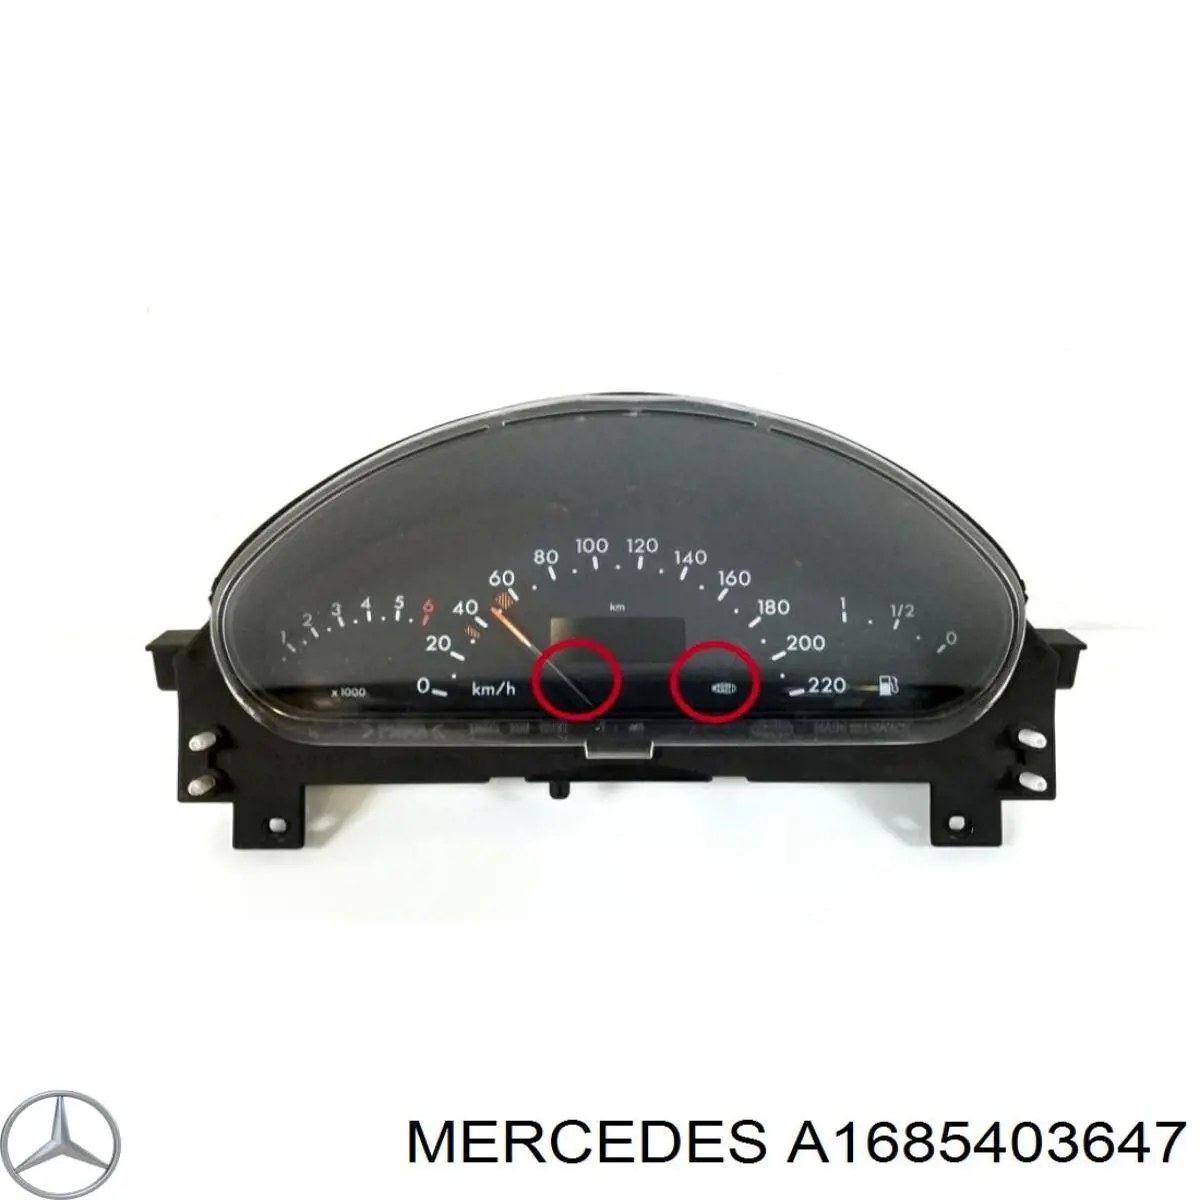 A1685403647 Mercedes painel de instrumentos (quadro de instrumentos)